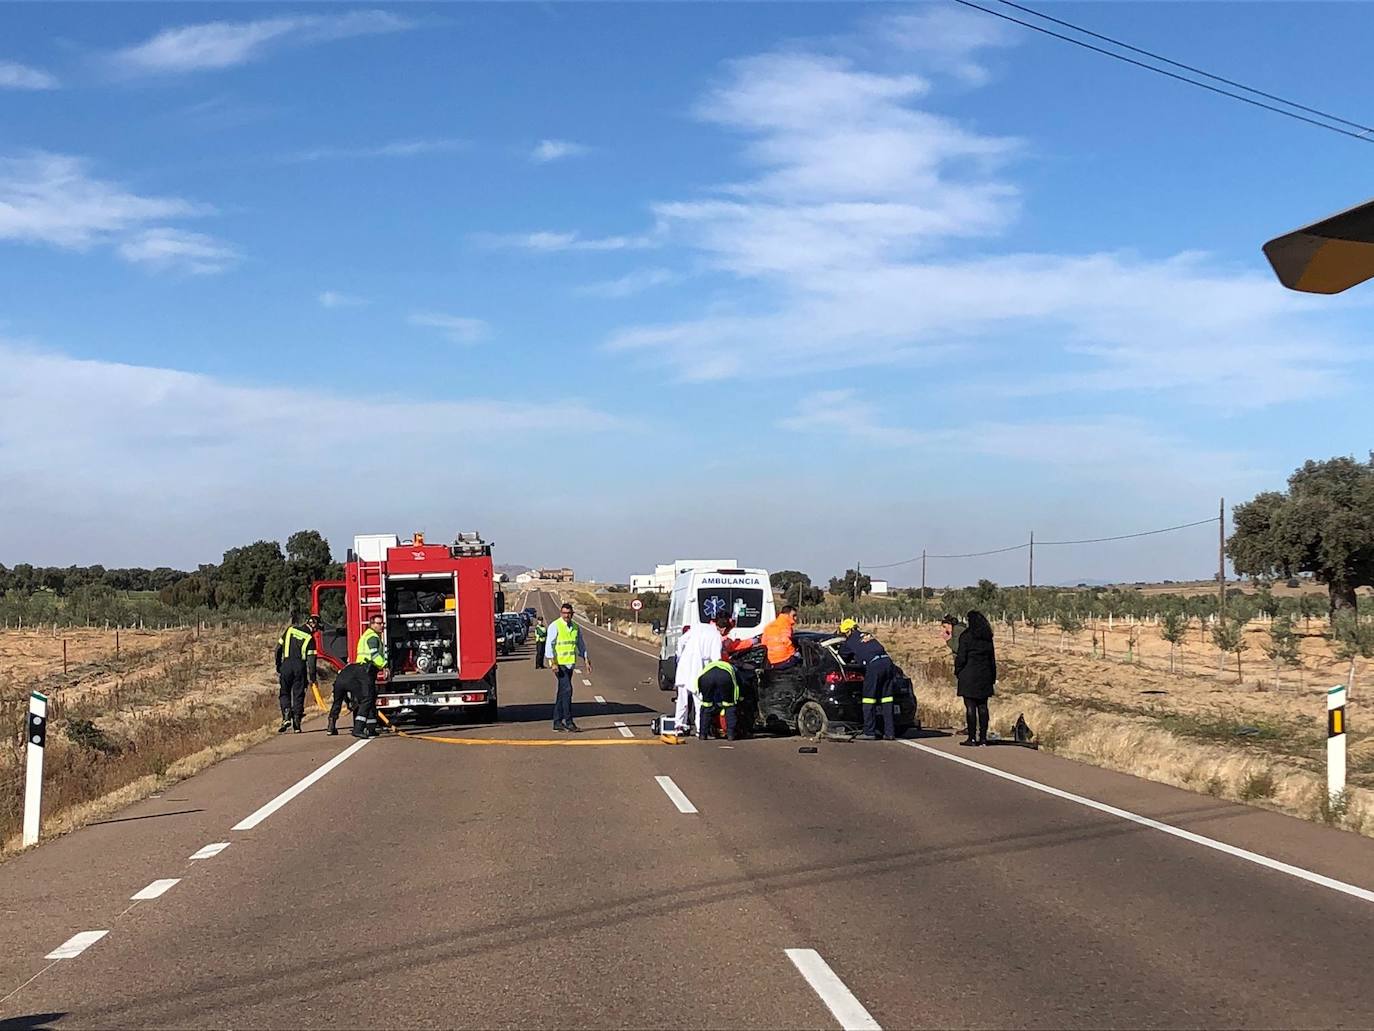 Fotos: Accidente ocurrido en la carretera Ex 346, que une Don Benito con Quintana de la Serena